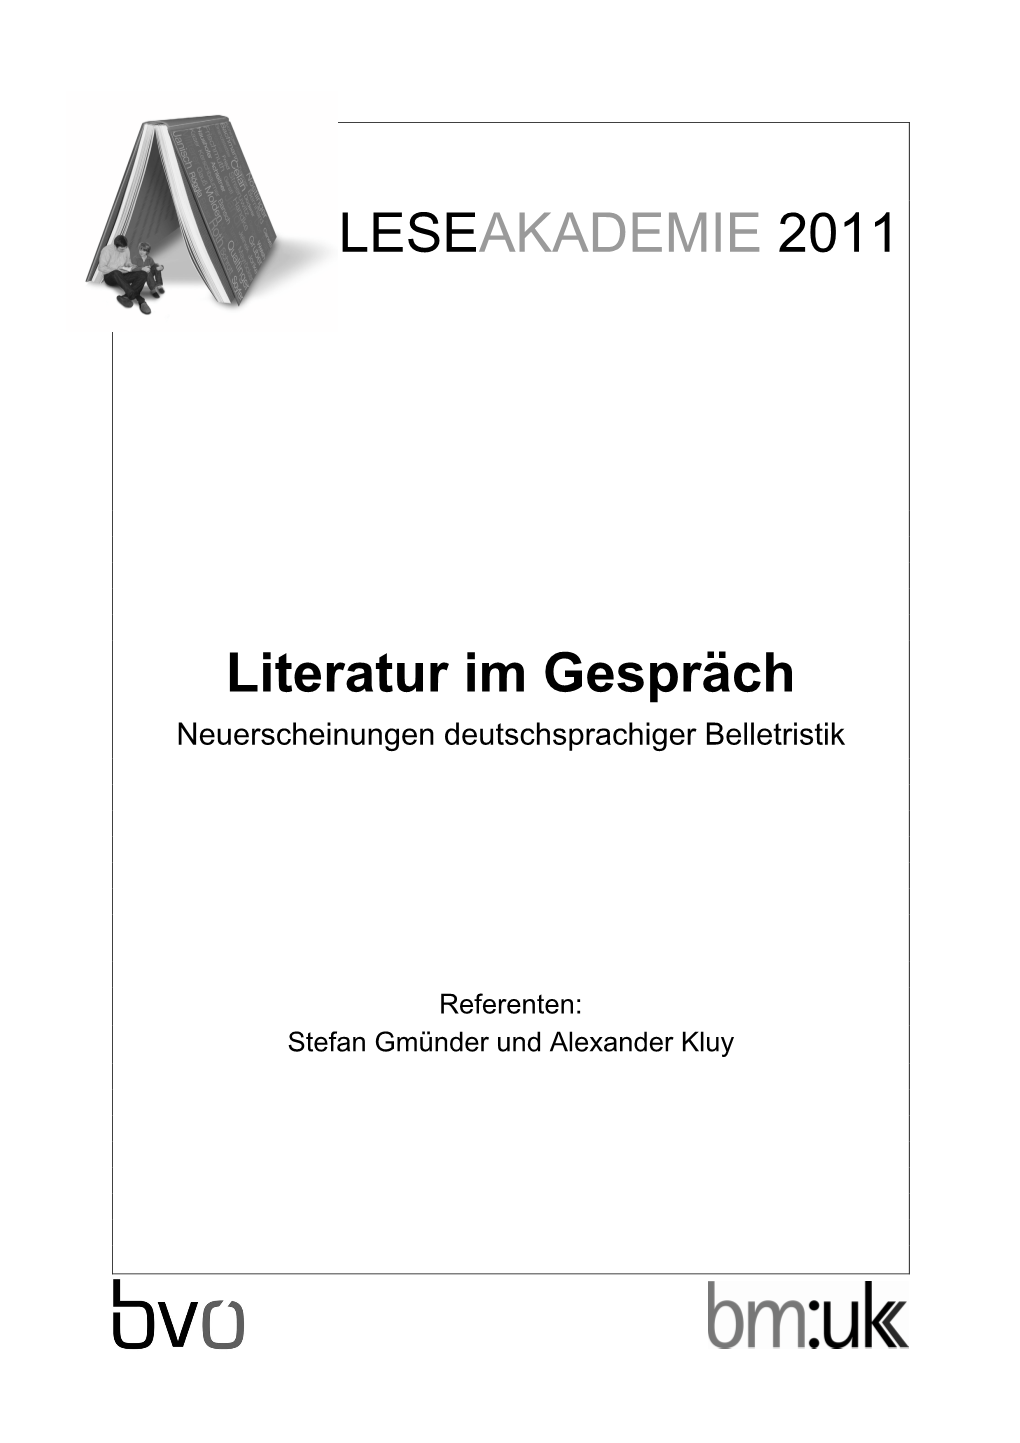 LESEAKADEMIE 2011 Literatur Im Gespräch